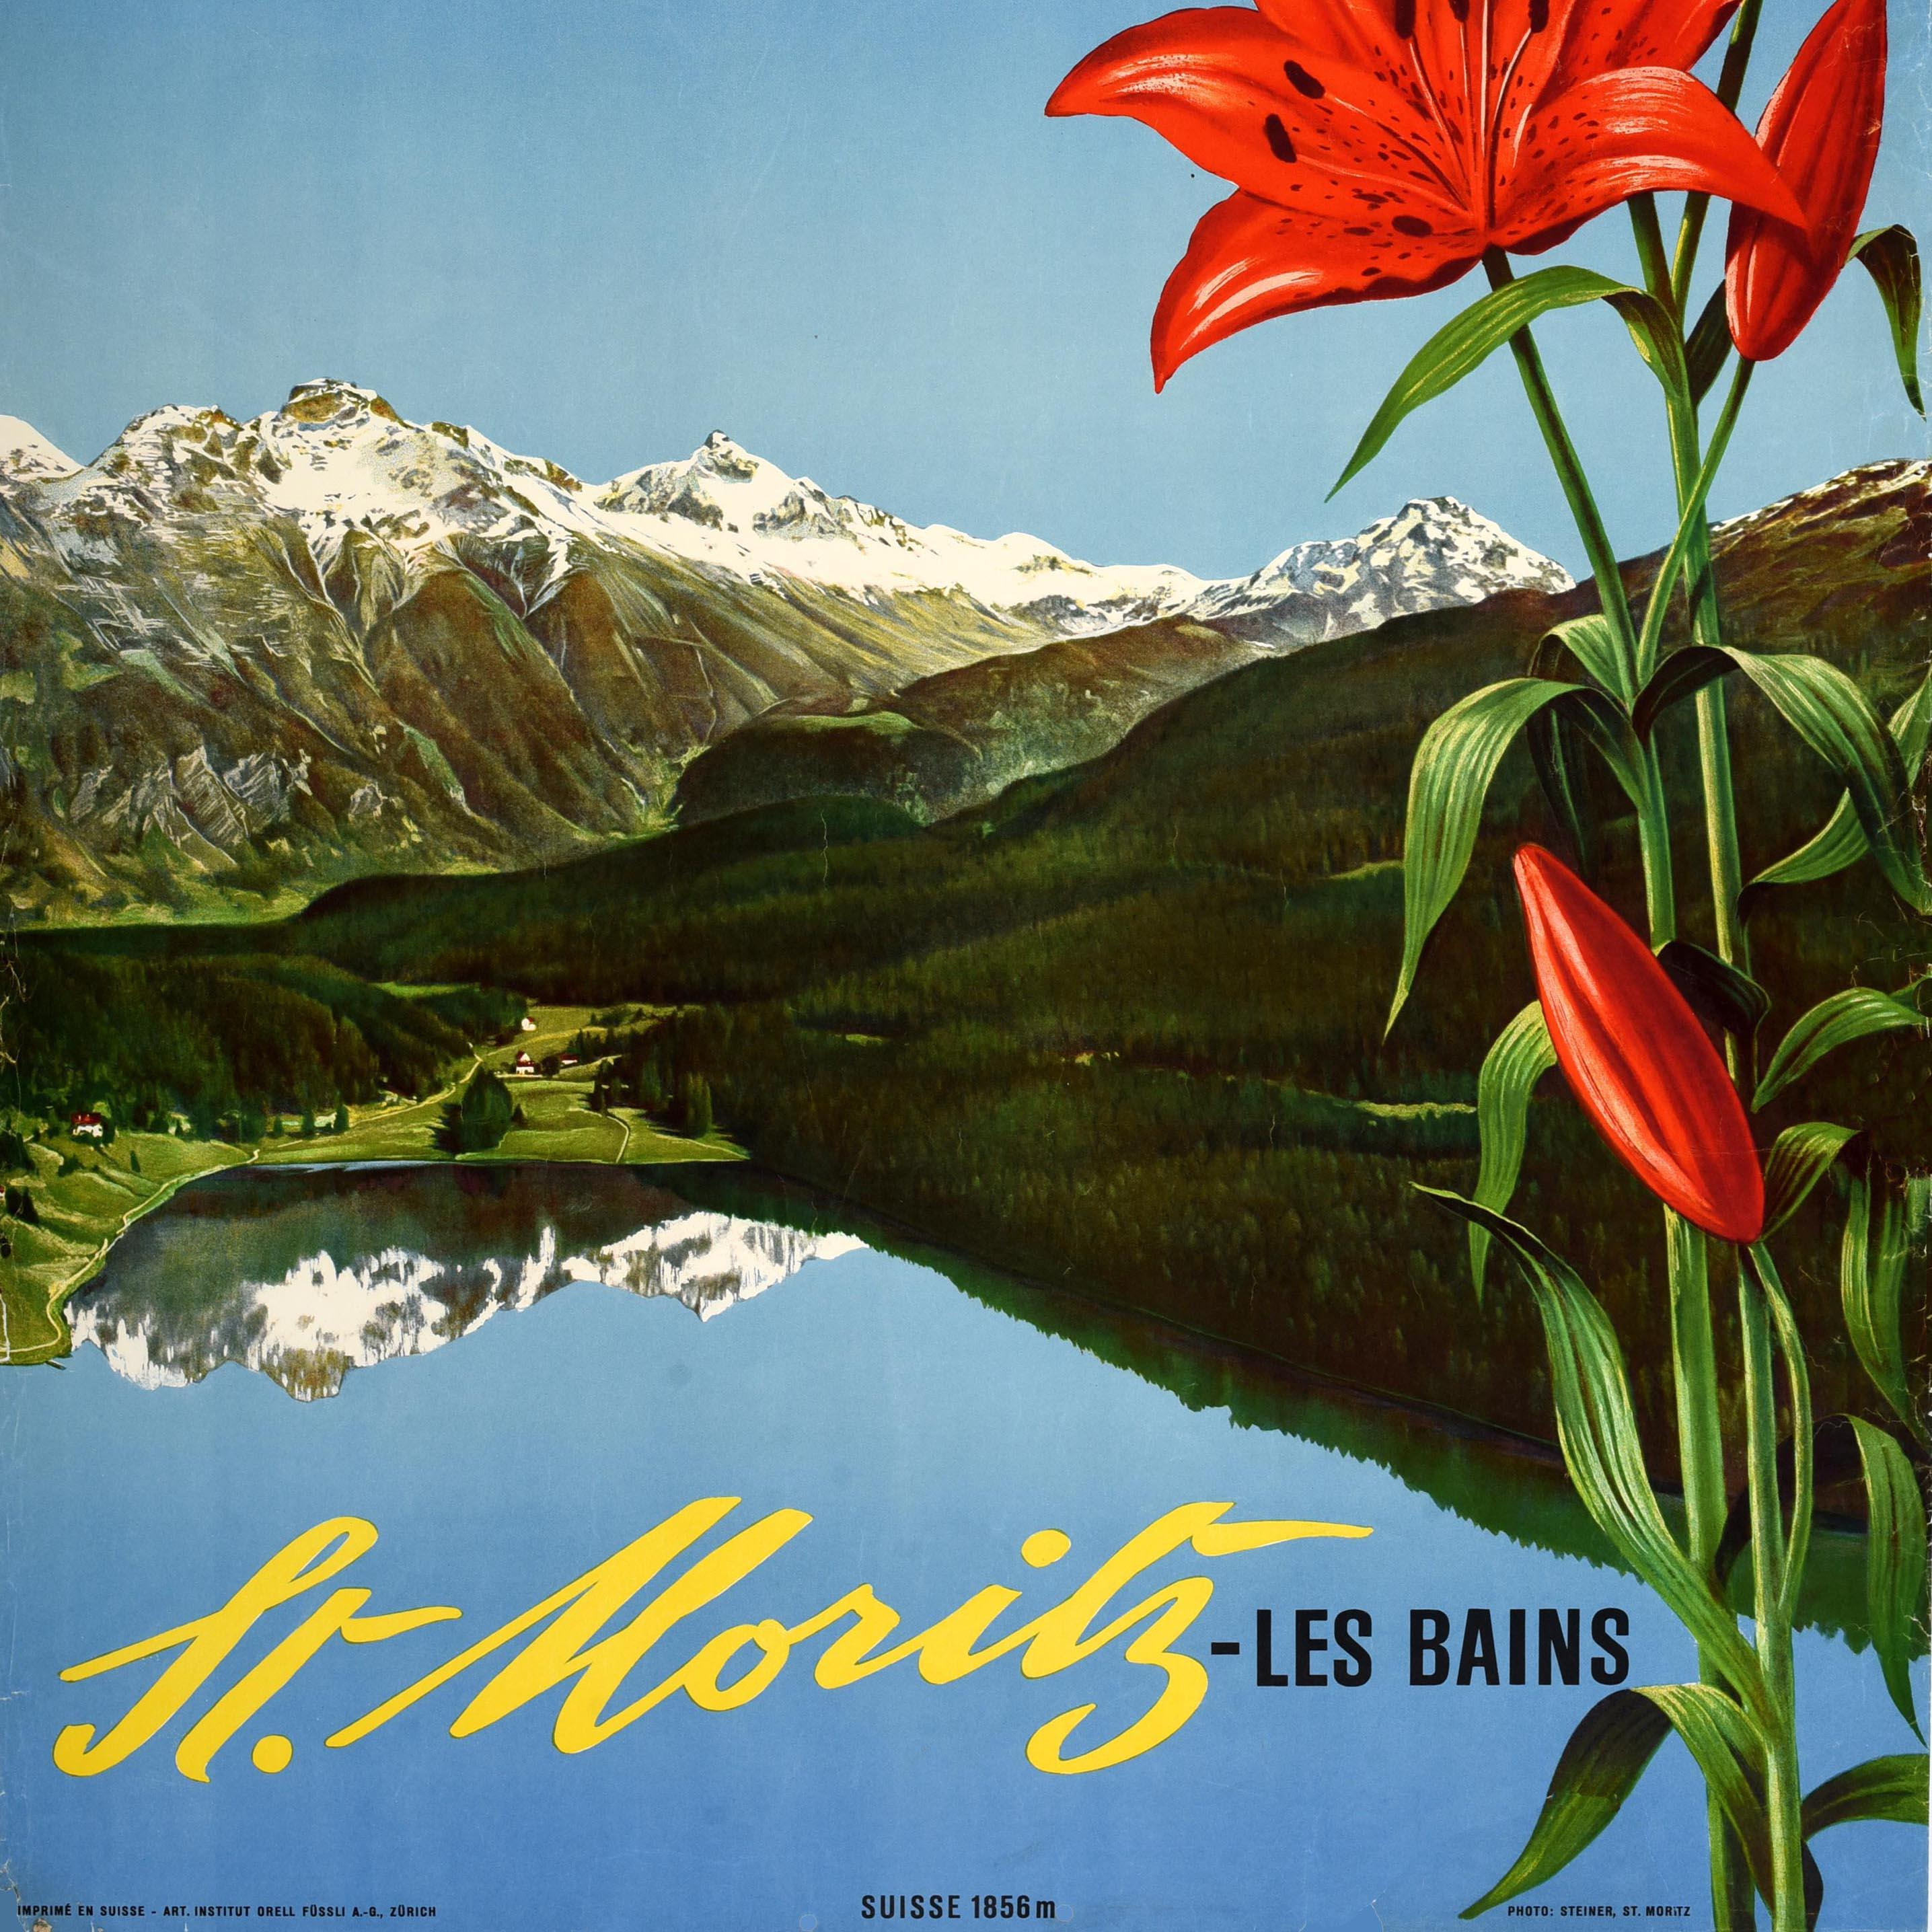 Original Vintage Schweiz Reiseplakat für St. Moritz Les Bains Suisse 1856m mit einem landschaftlichen Bild von der bemerkenswerten Schweizer Fotografen Albert Steiner (1877-1965) von einem See Seite Dorf in der Landschaft von Bäumen auf Hügeln unter